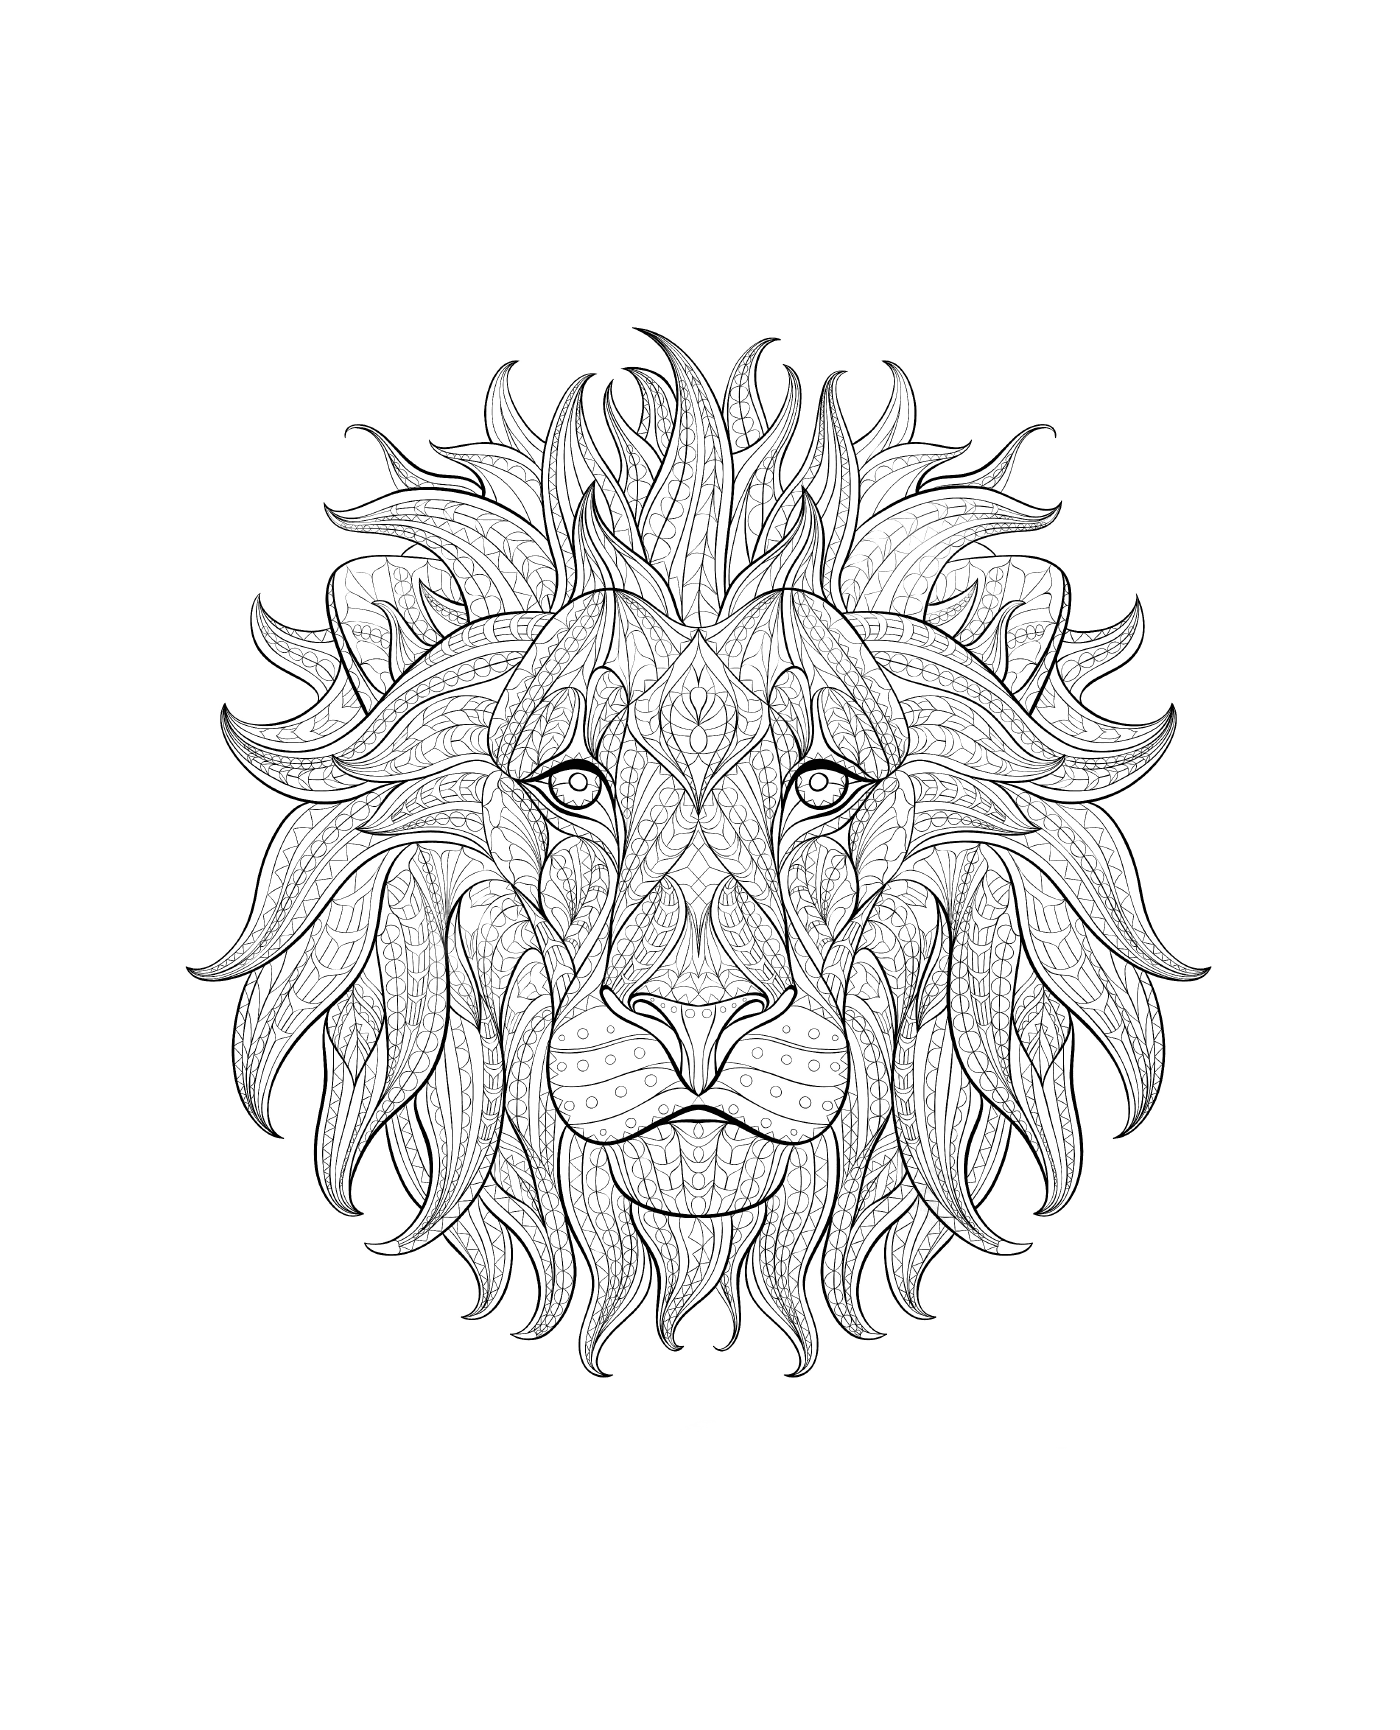  A cabeça de um leão 